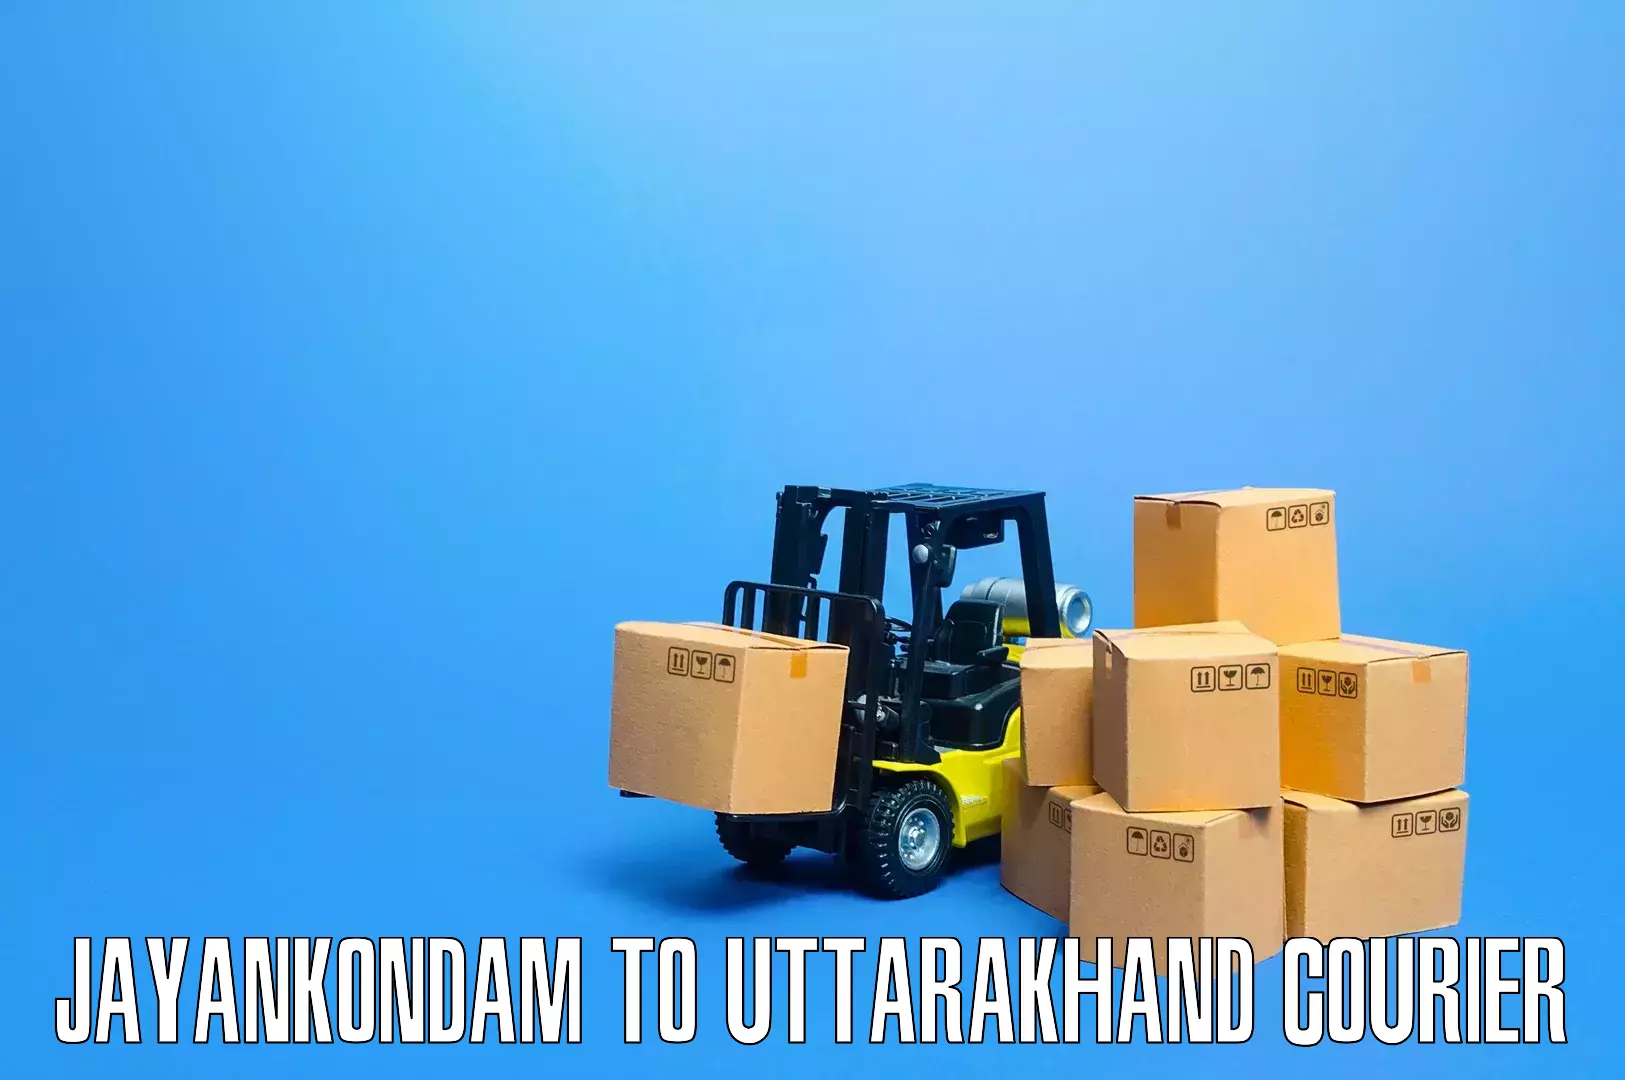 Professional furniture movers Jayankondam to Kotdwara